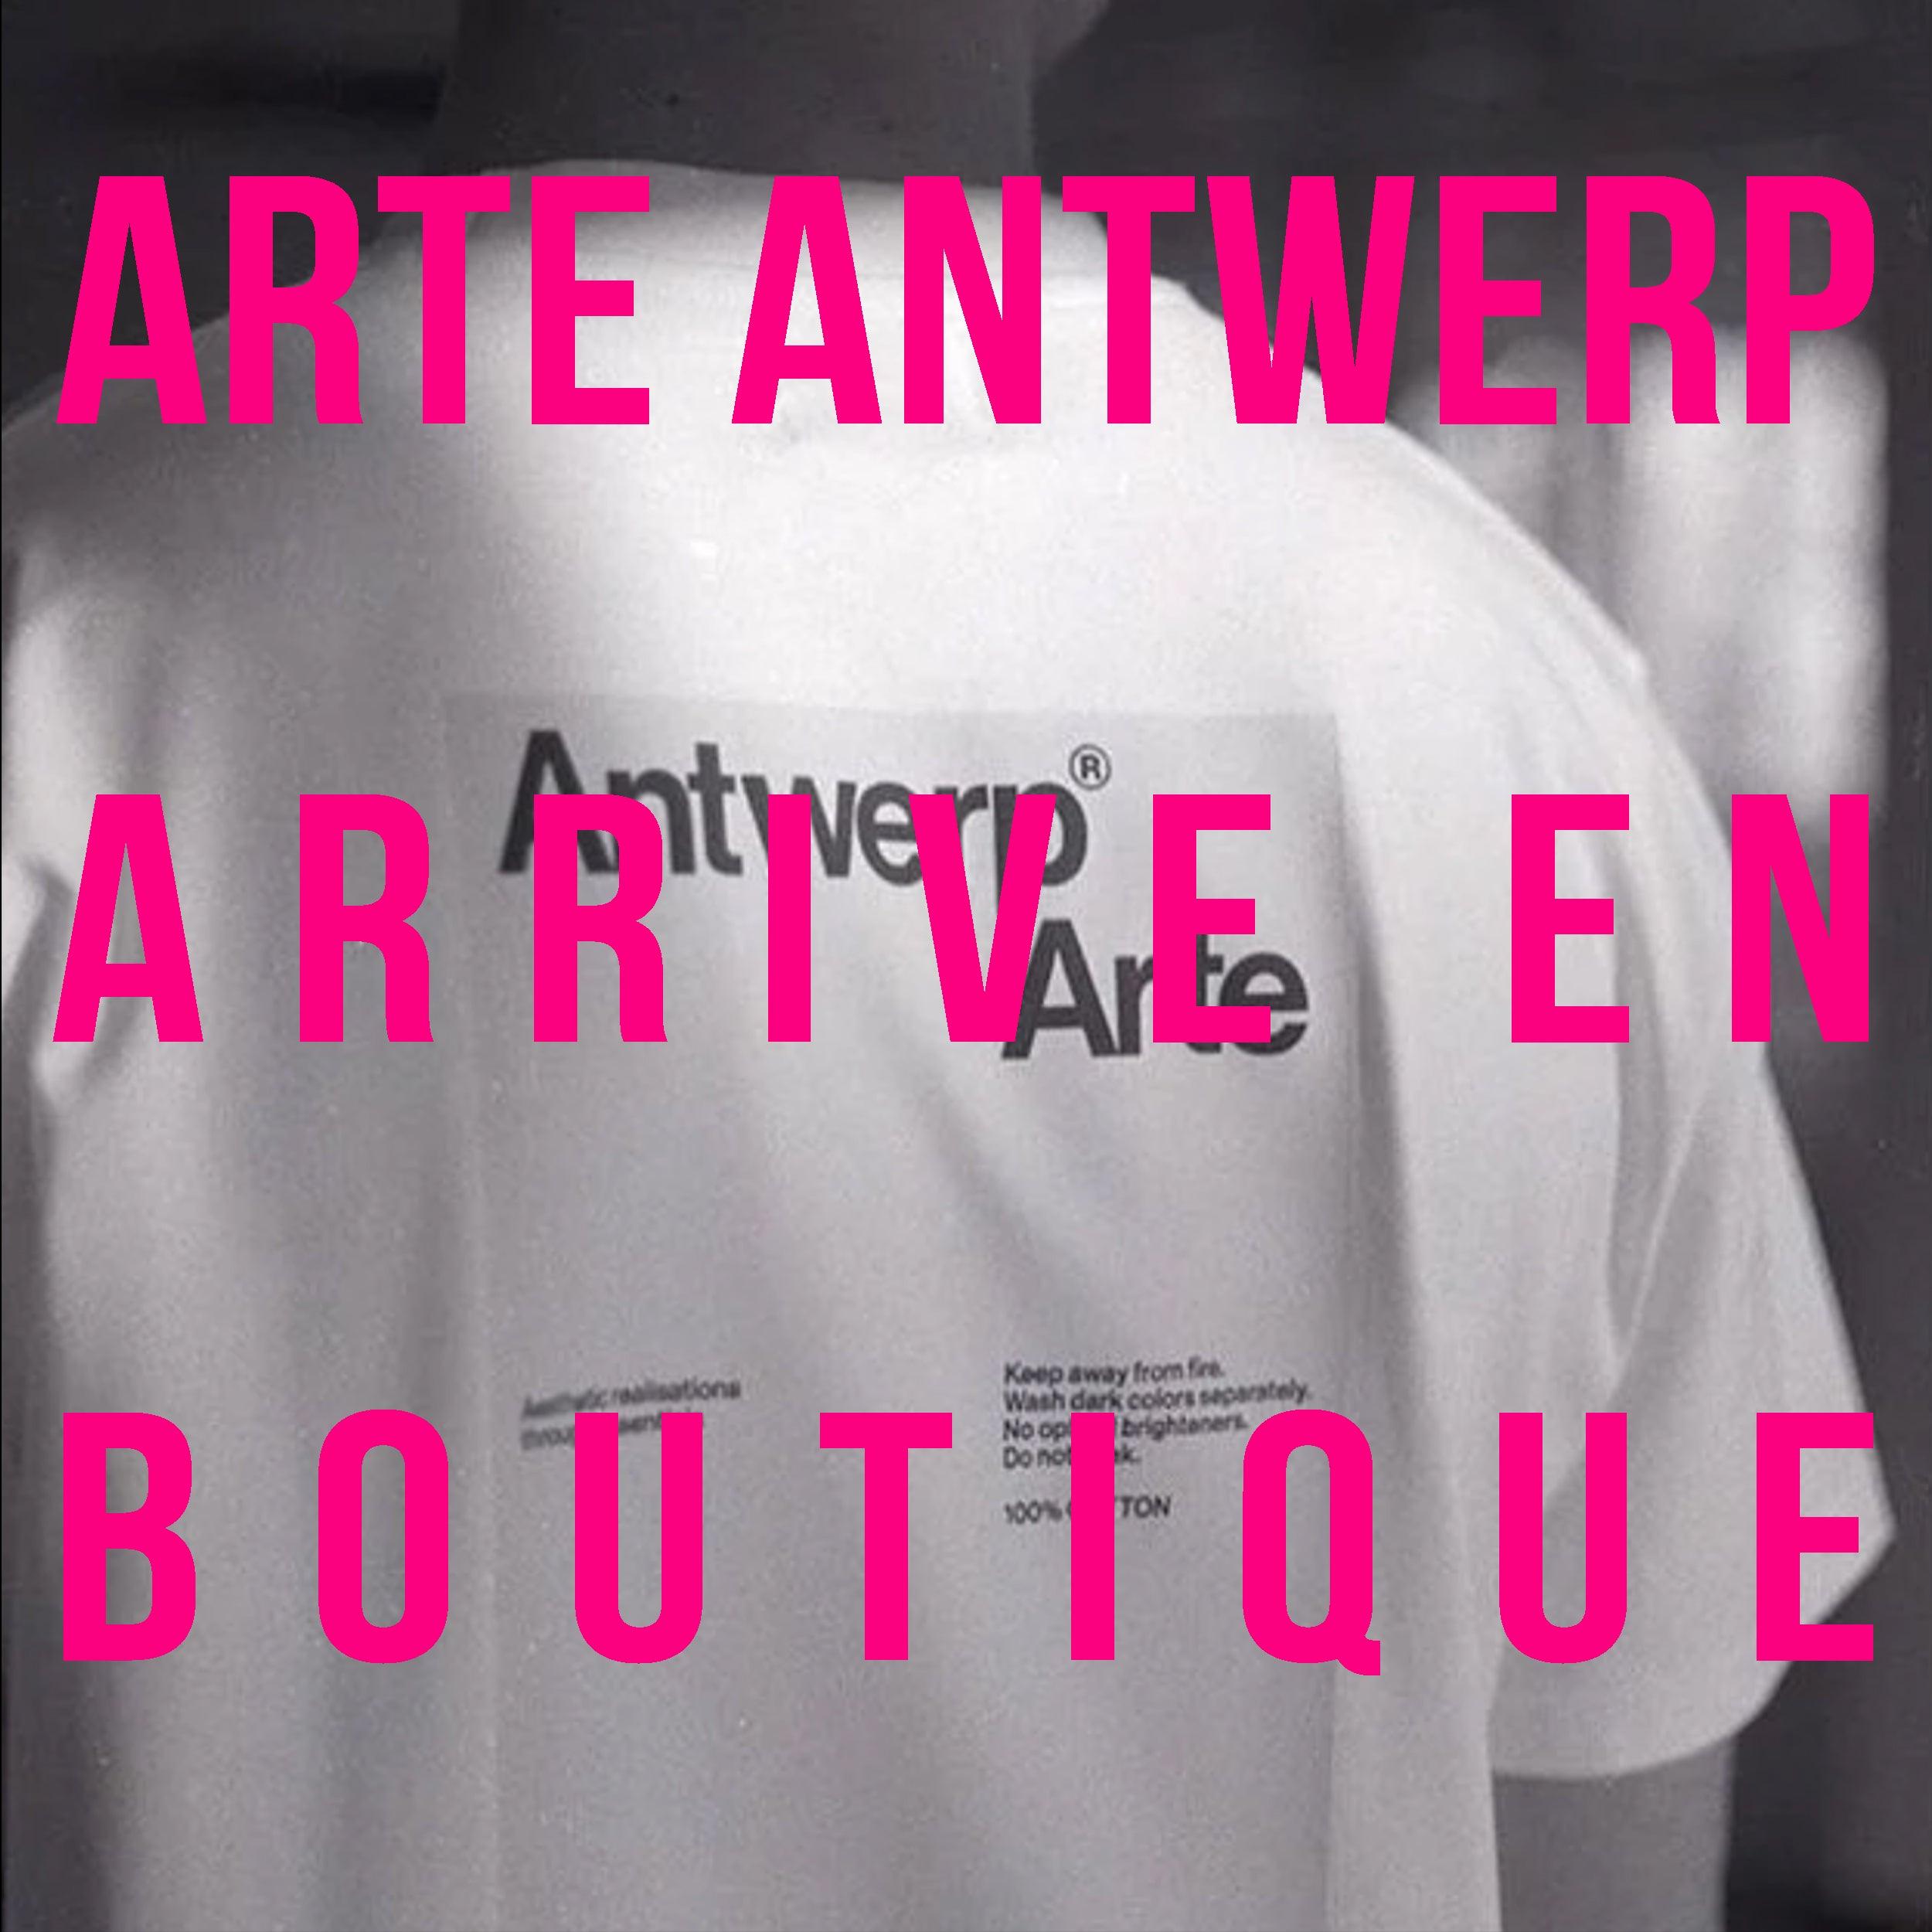 ARTE Antwerp, le label belge arrive en boutique - Lesthete